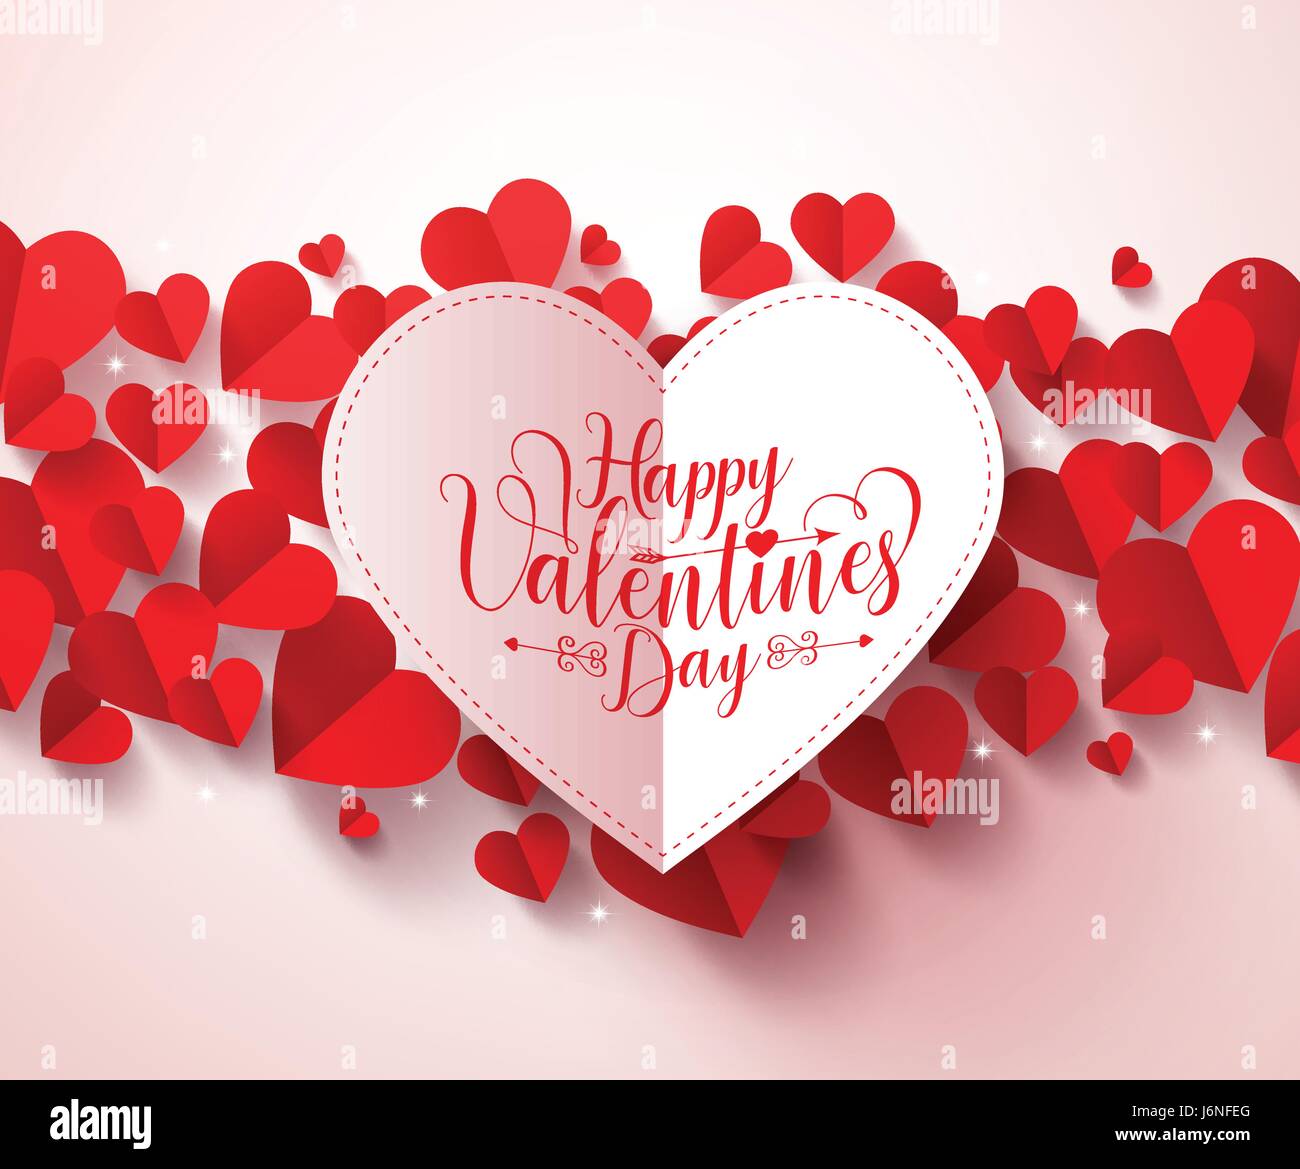 Valentinstag Grüße Karte Vektor-Design in der Farbe weiß mit happy Valentines Day Typografie. Rote Herzen in weißem Hintergrund Stock Vektor